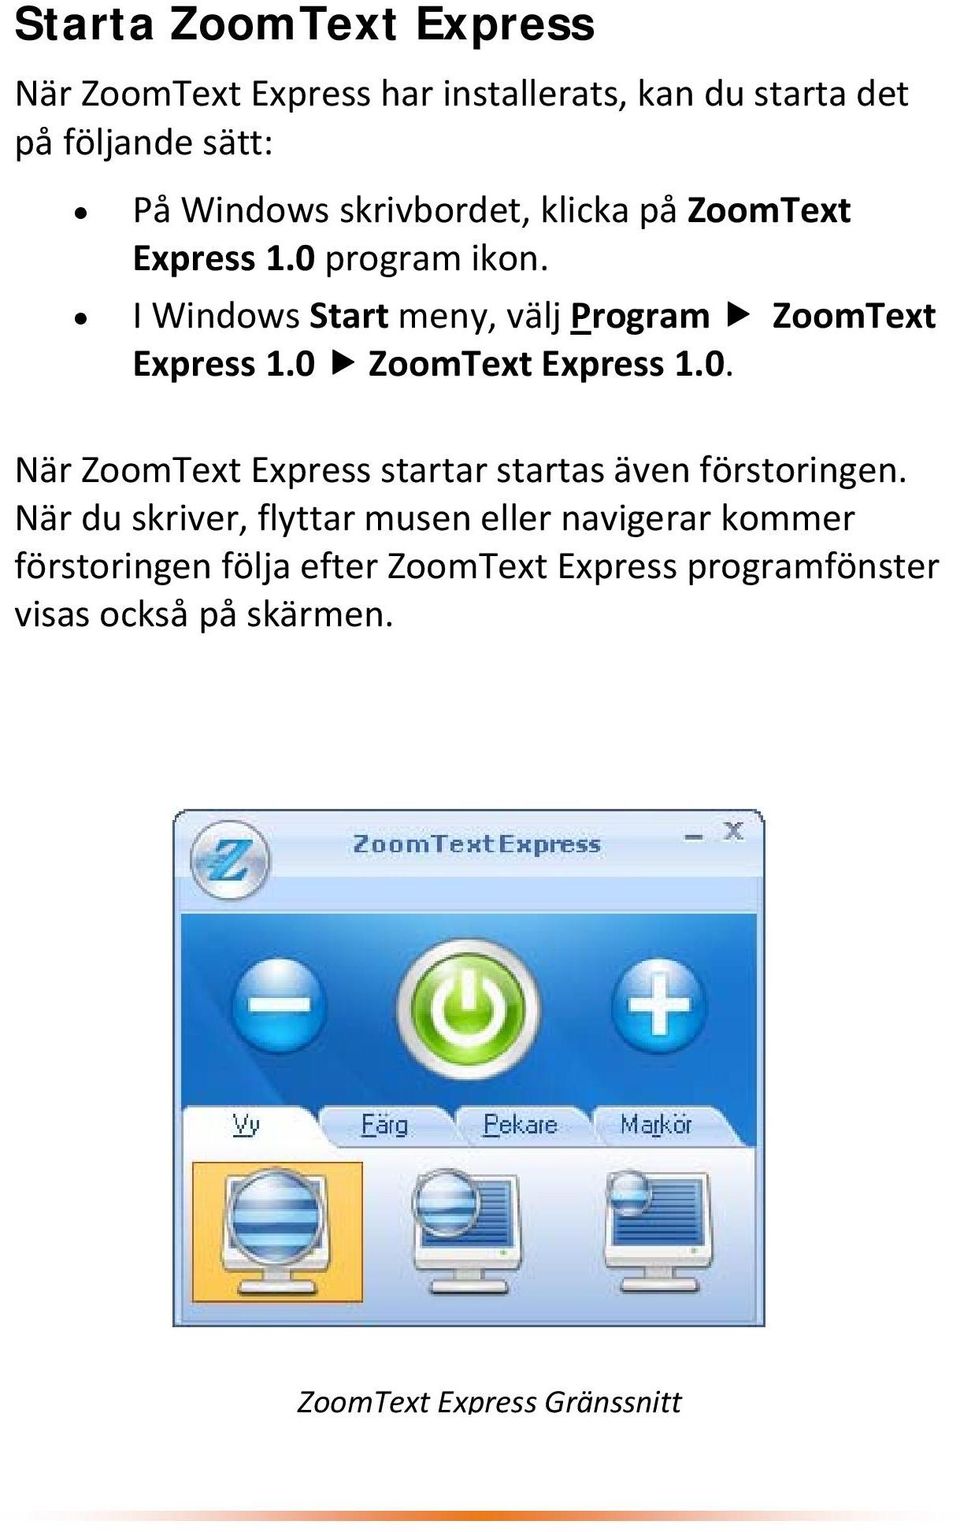 0 ZoomText Express 1.0. När ZoomText Express startar startas även förstoringen.